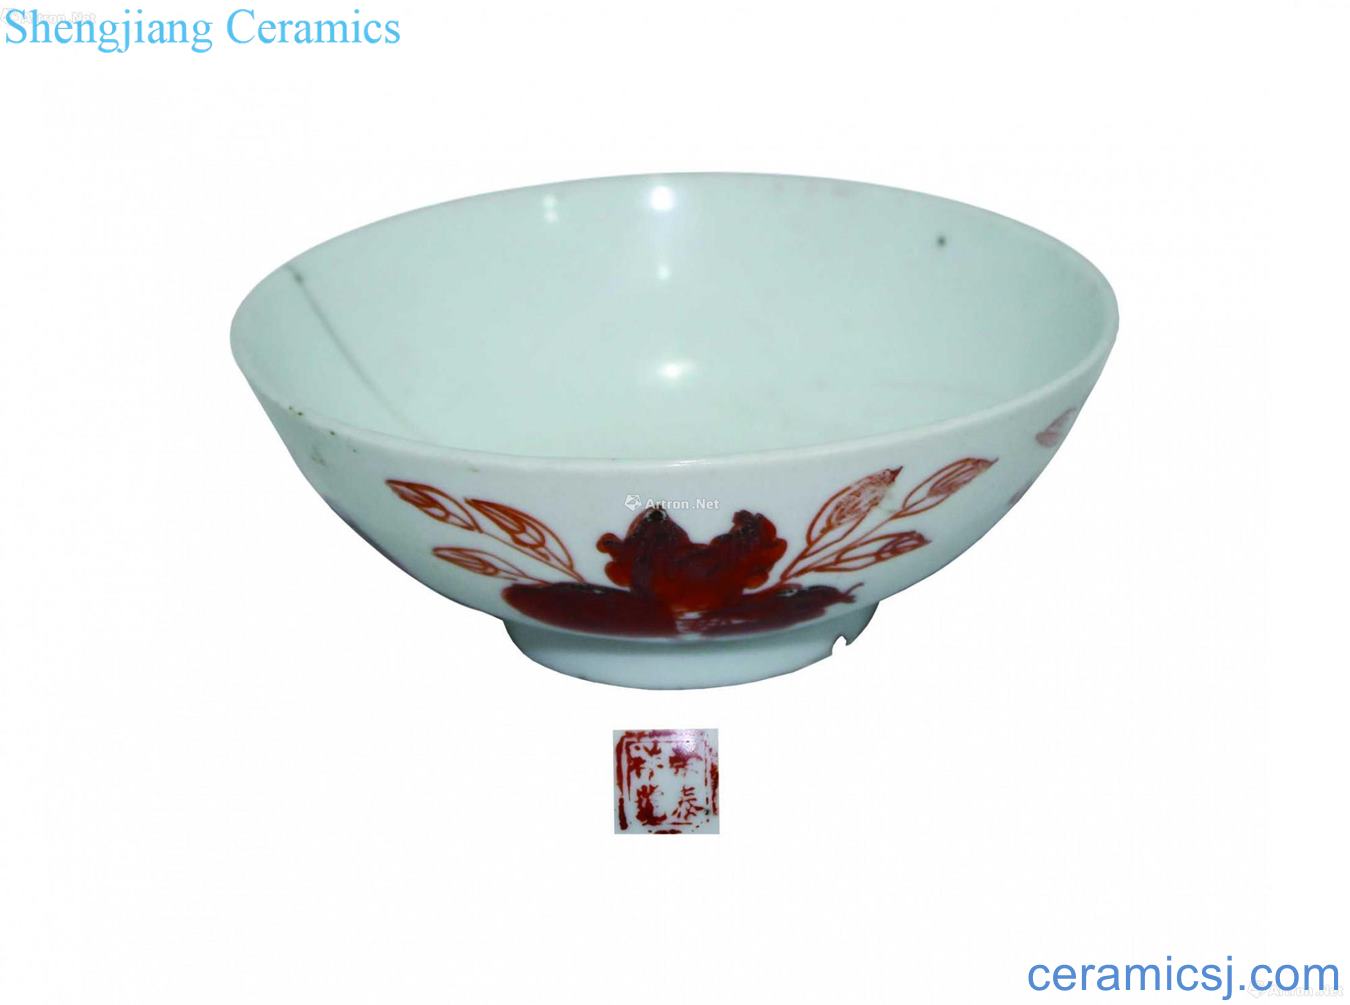 Youligong bowls